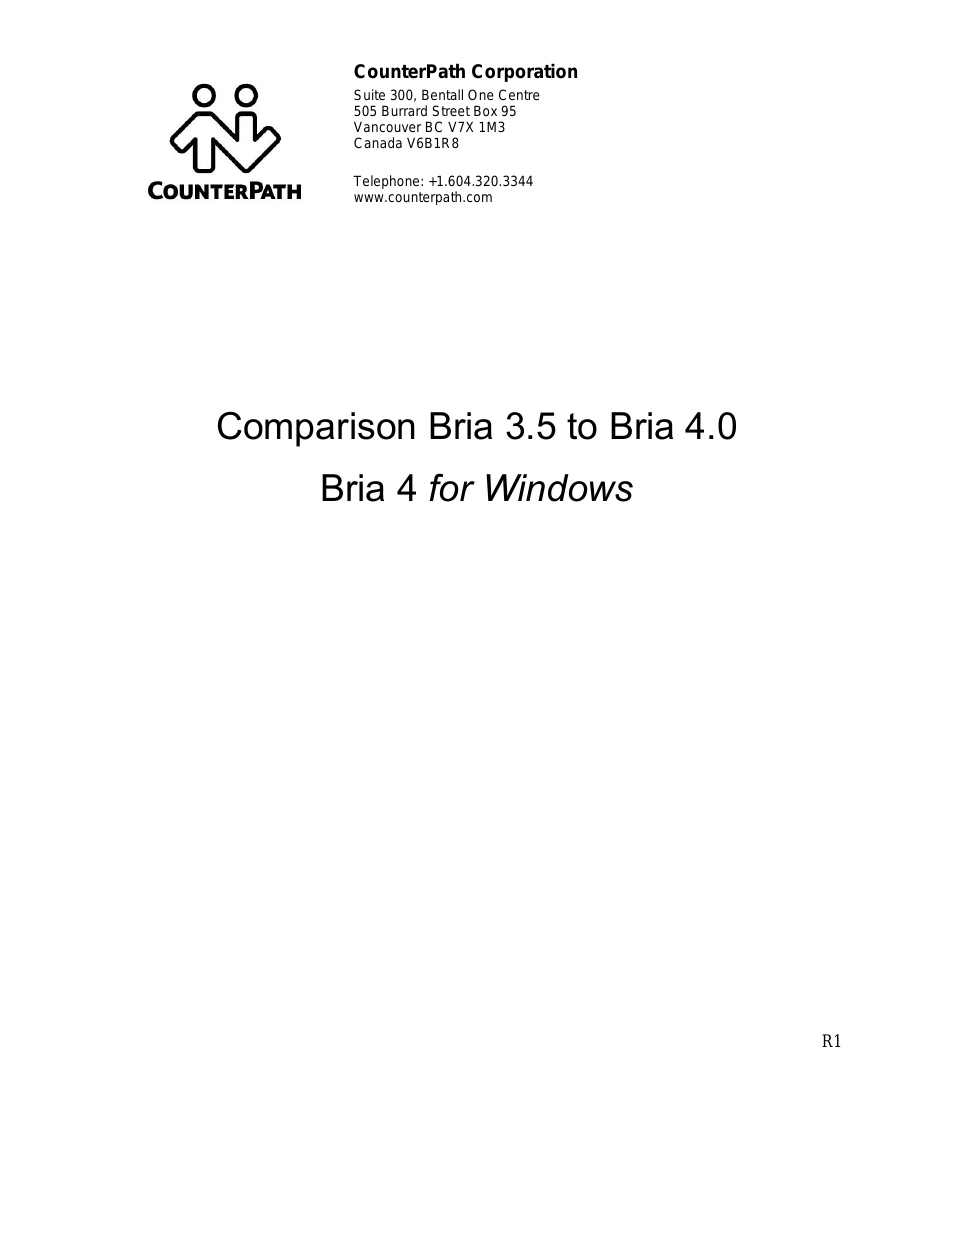 Bria 3.5 vs 4 for Windows Comparison Guide